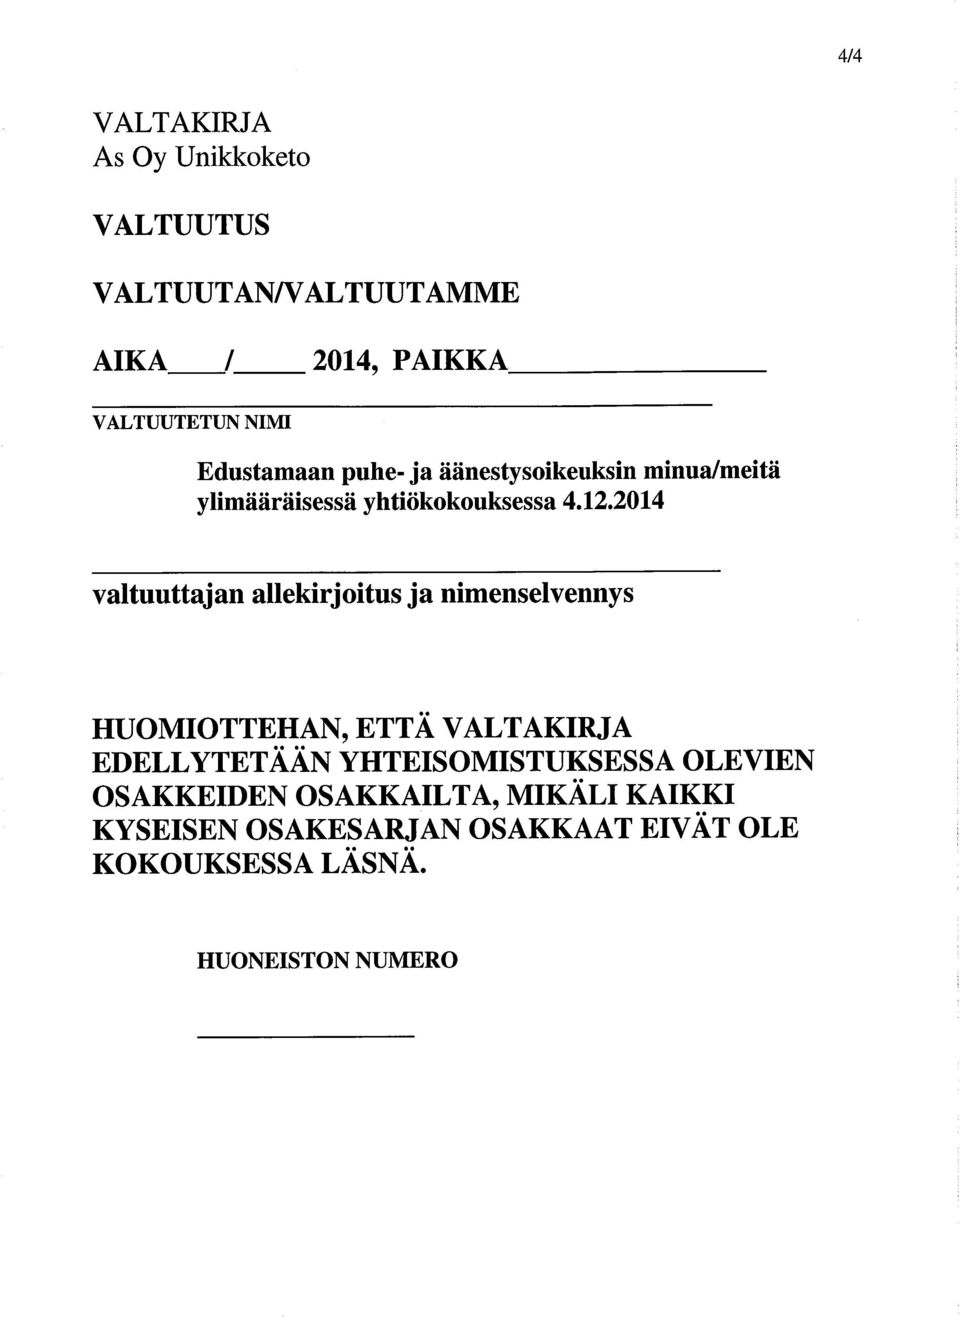 2014 valtuuttajan allekirjoitus ja nimenselvennys HUOMIOTTEHAN,ETTÄ VALTAKIRJA EDELLYTET ÄÄN